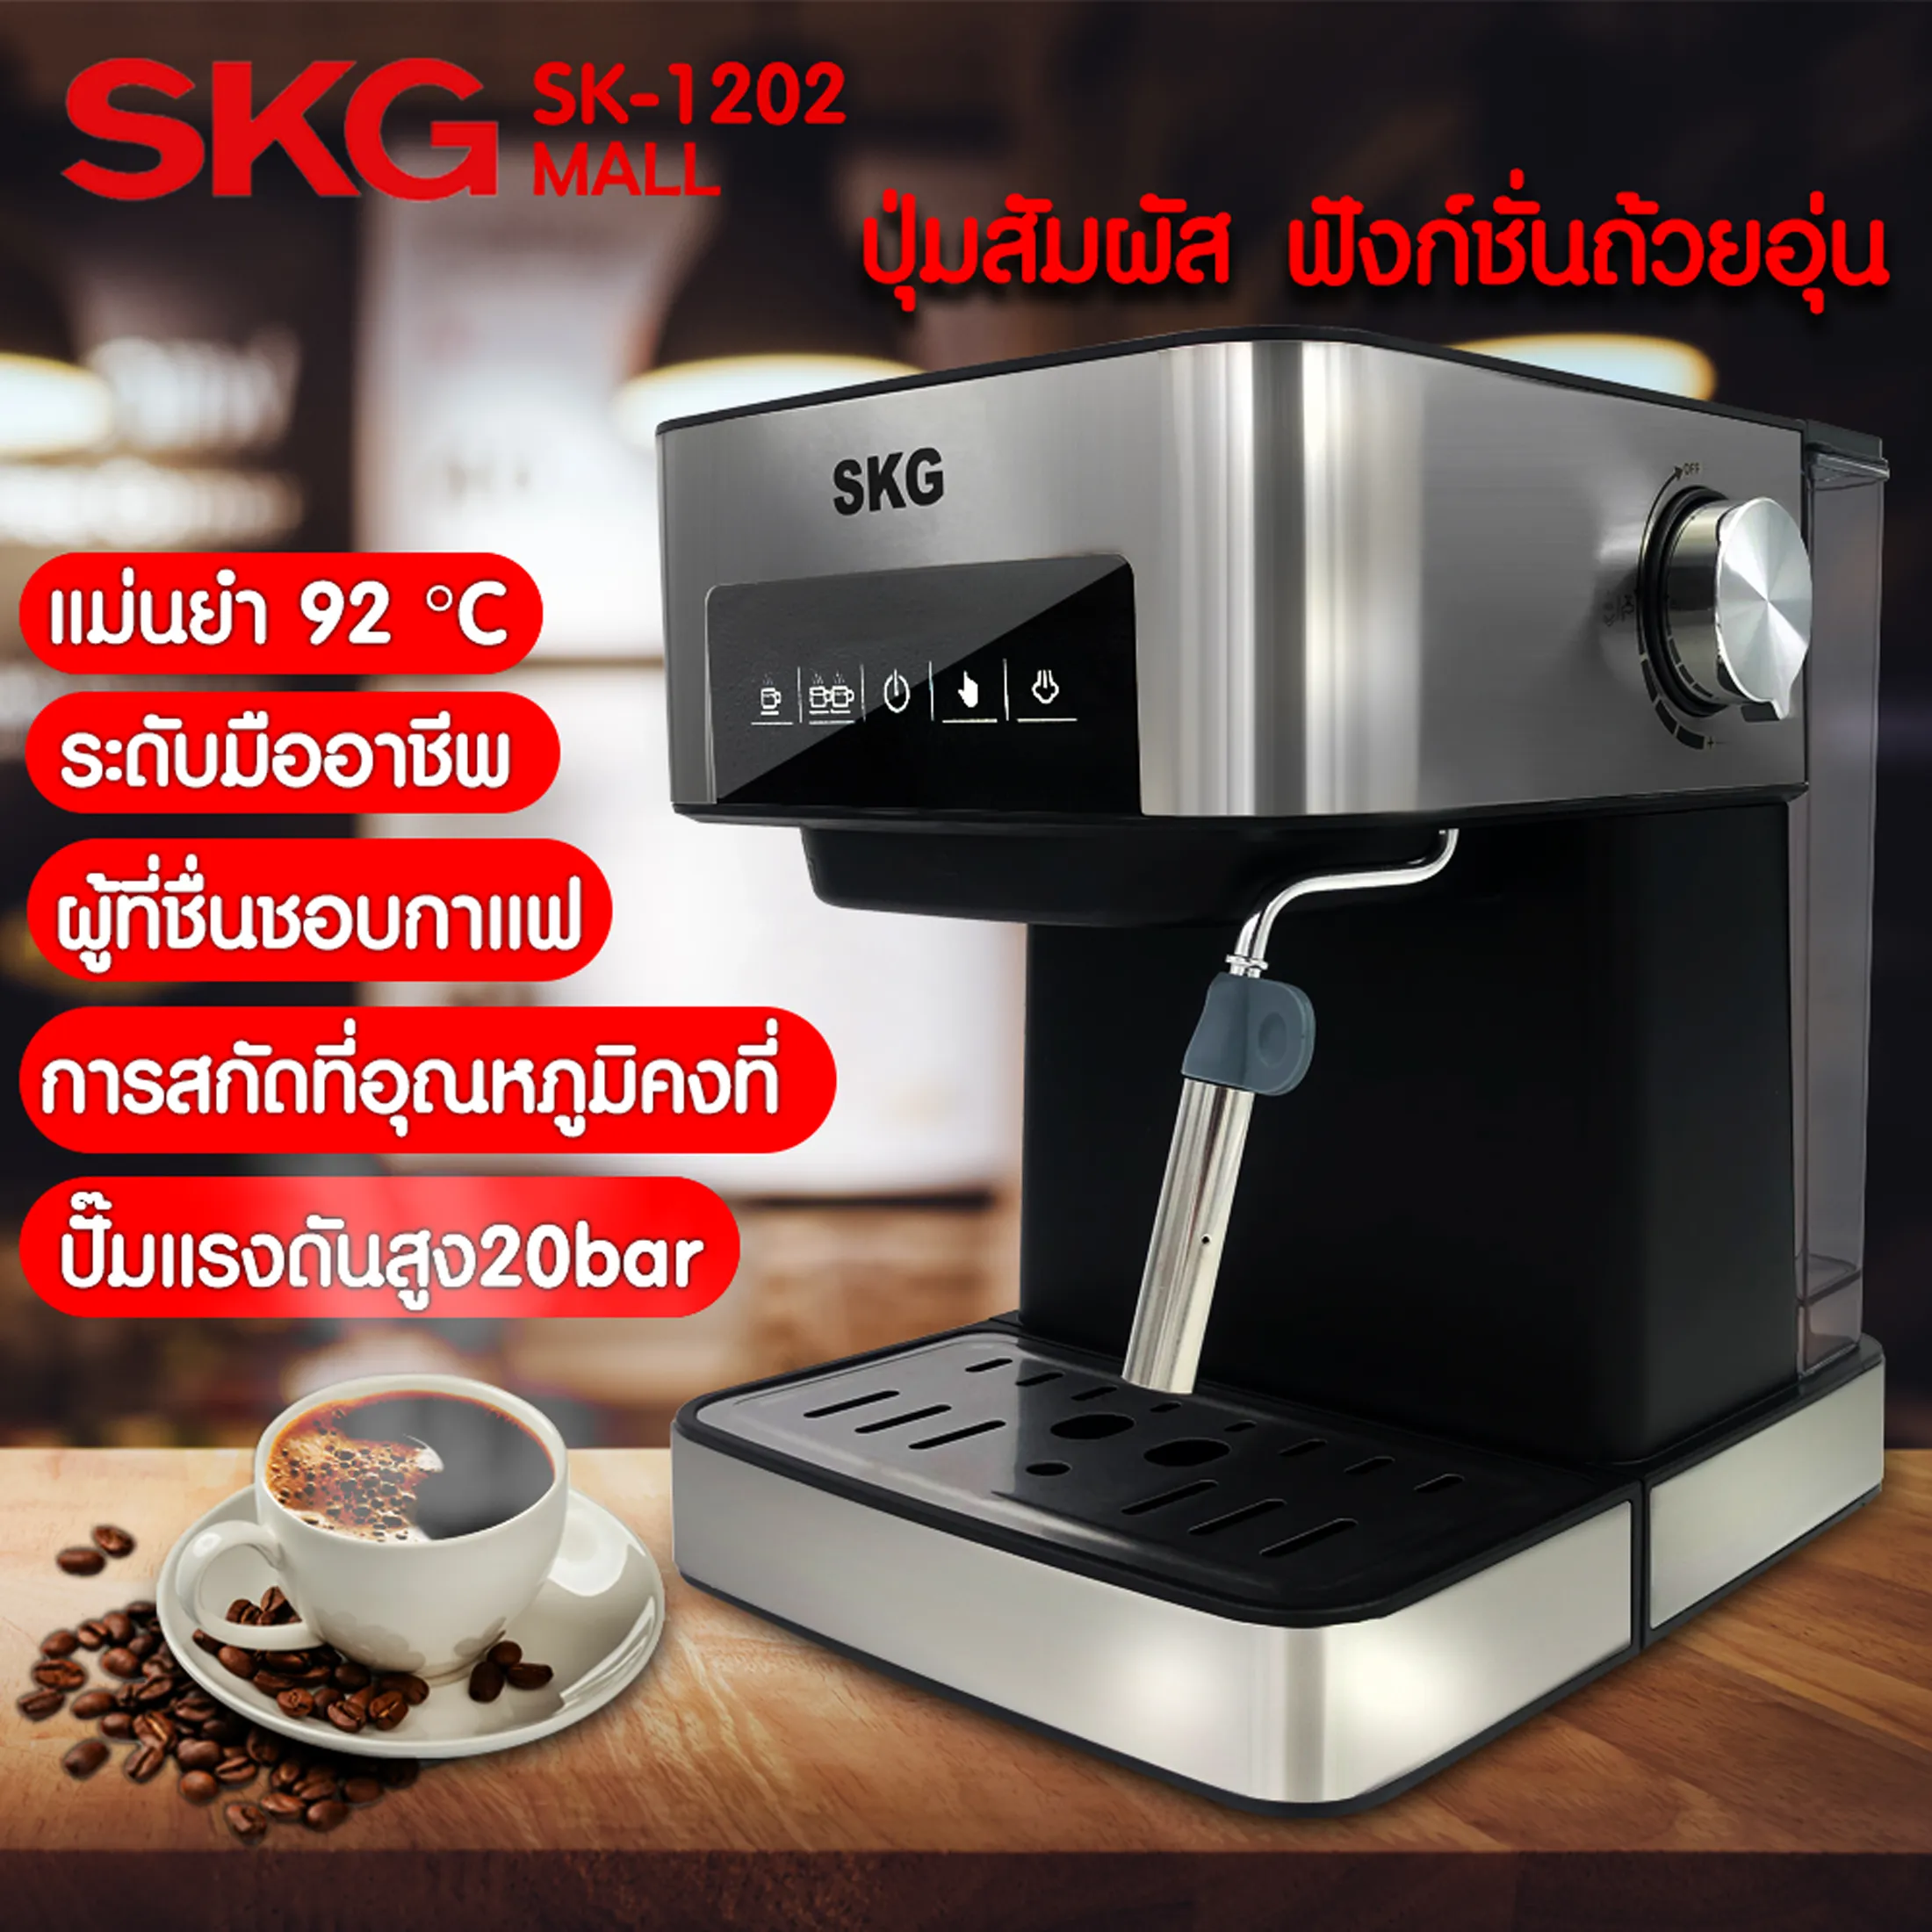 SKG เครื่องชงกาแฟสด 850W 1.6ลิตร   เครื่องชงกาแฟ โดยอัตโนมัติอย่างเต็มที่ กาแฟอิตาเลี่ยนเล็ก ๆ ระดับมืออาชีพ ปุ่มส SK-1202